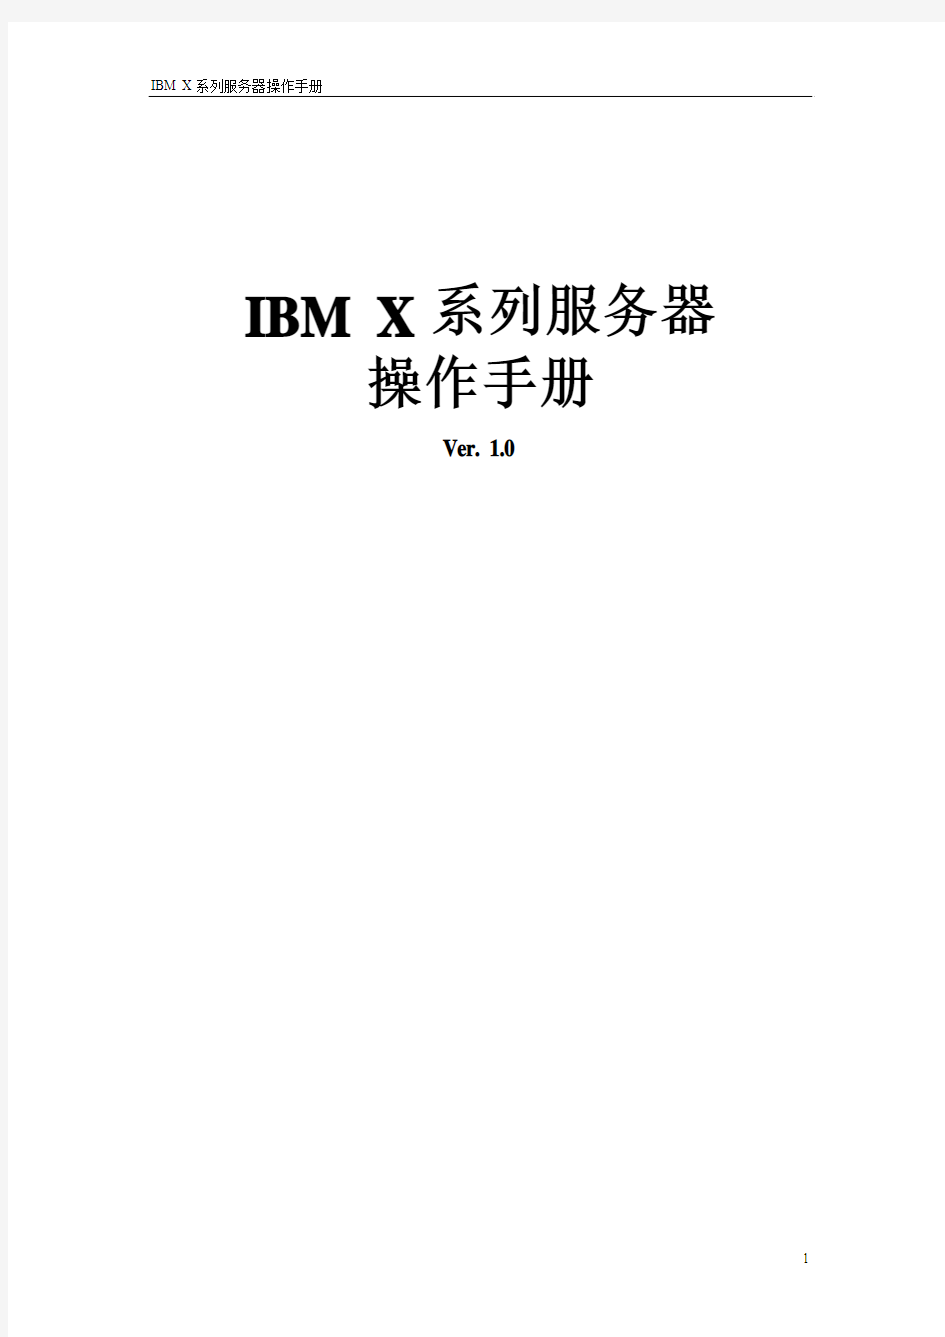 IBM_X系列服务器操作手册v1.0